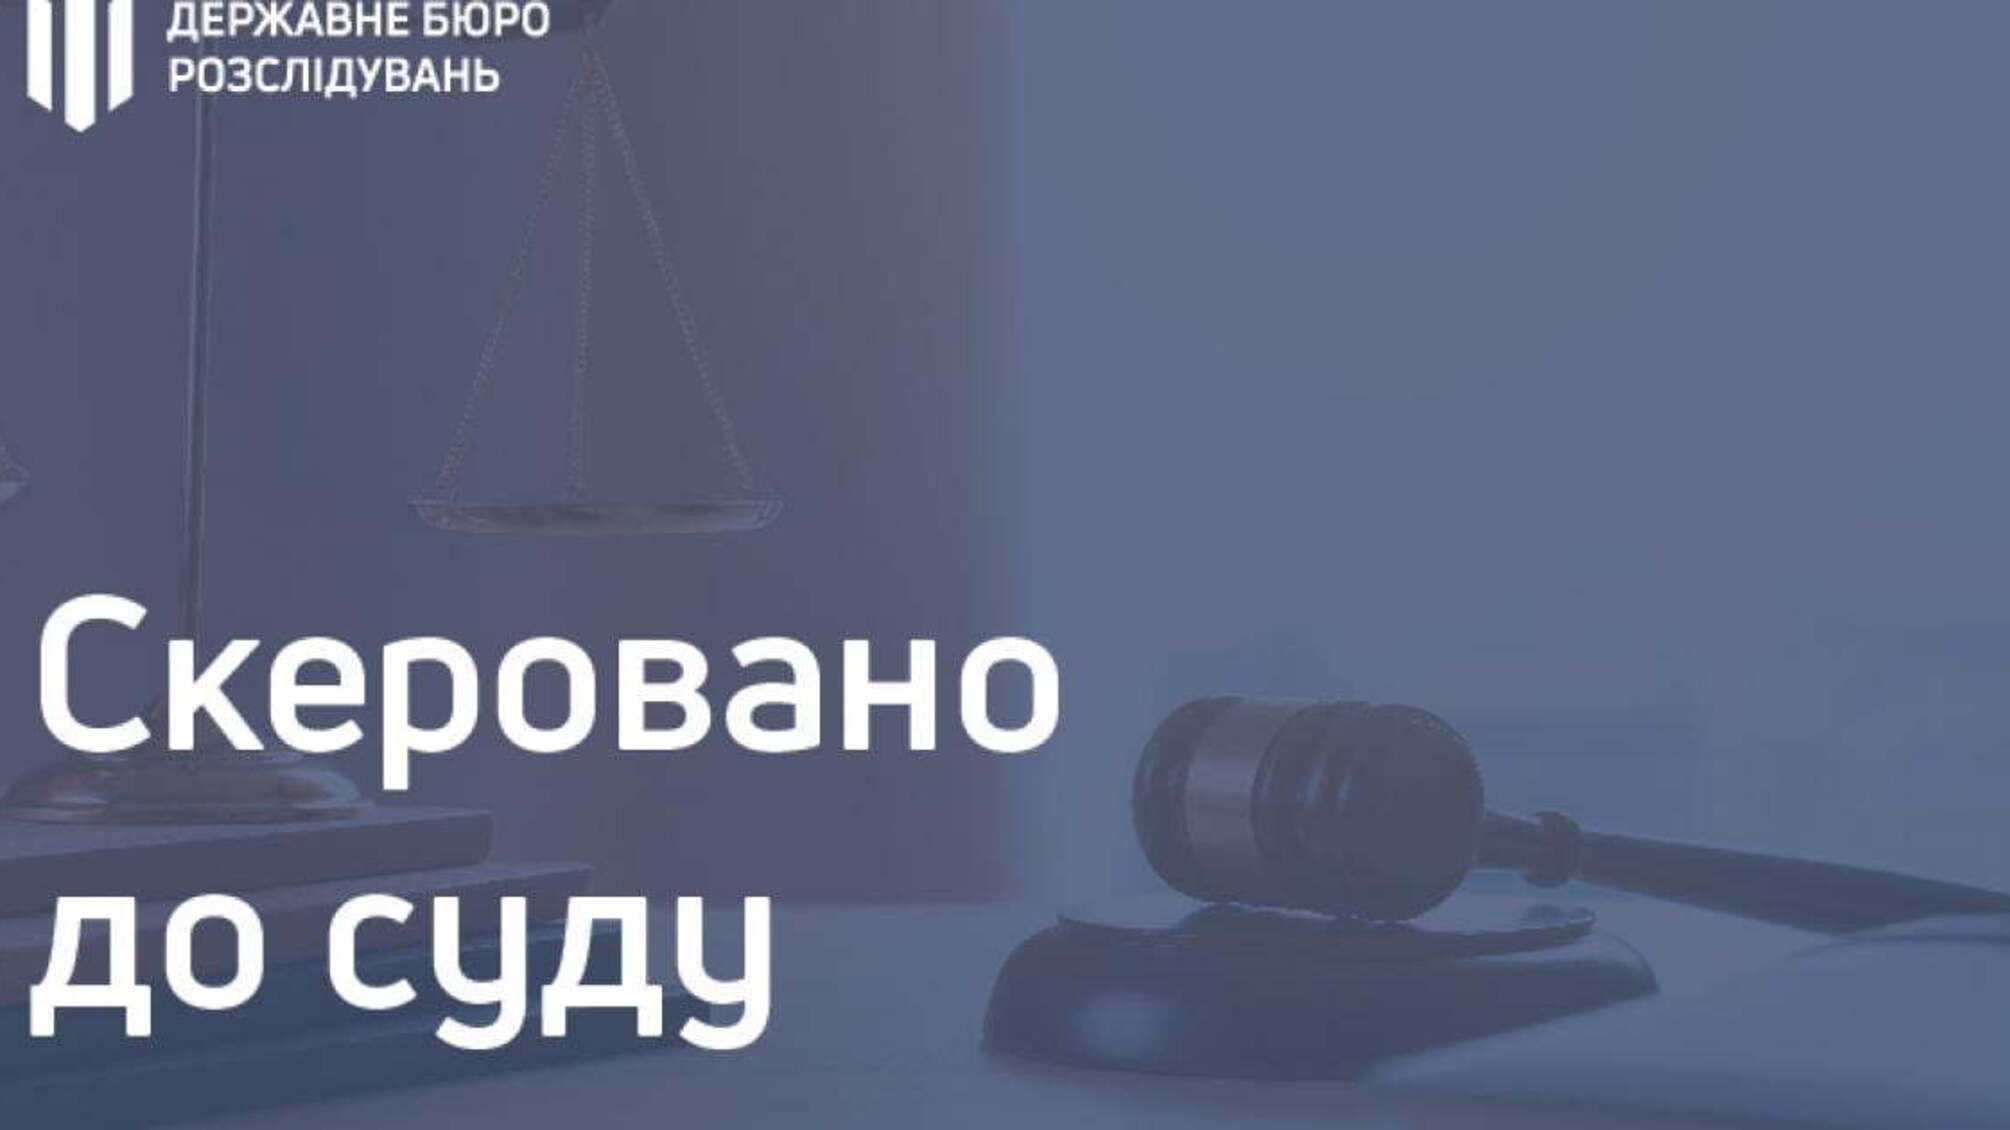 15 000 гривень хабара за виготовлення посвідчення водія - поліцейський постане перед судом